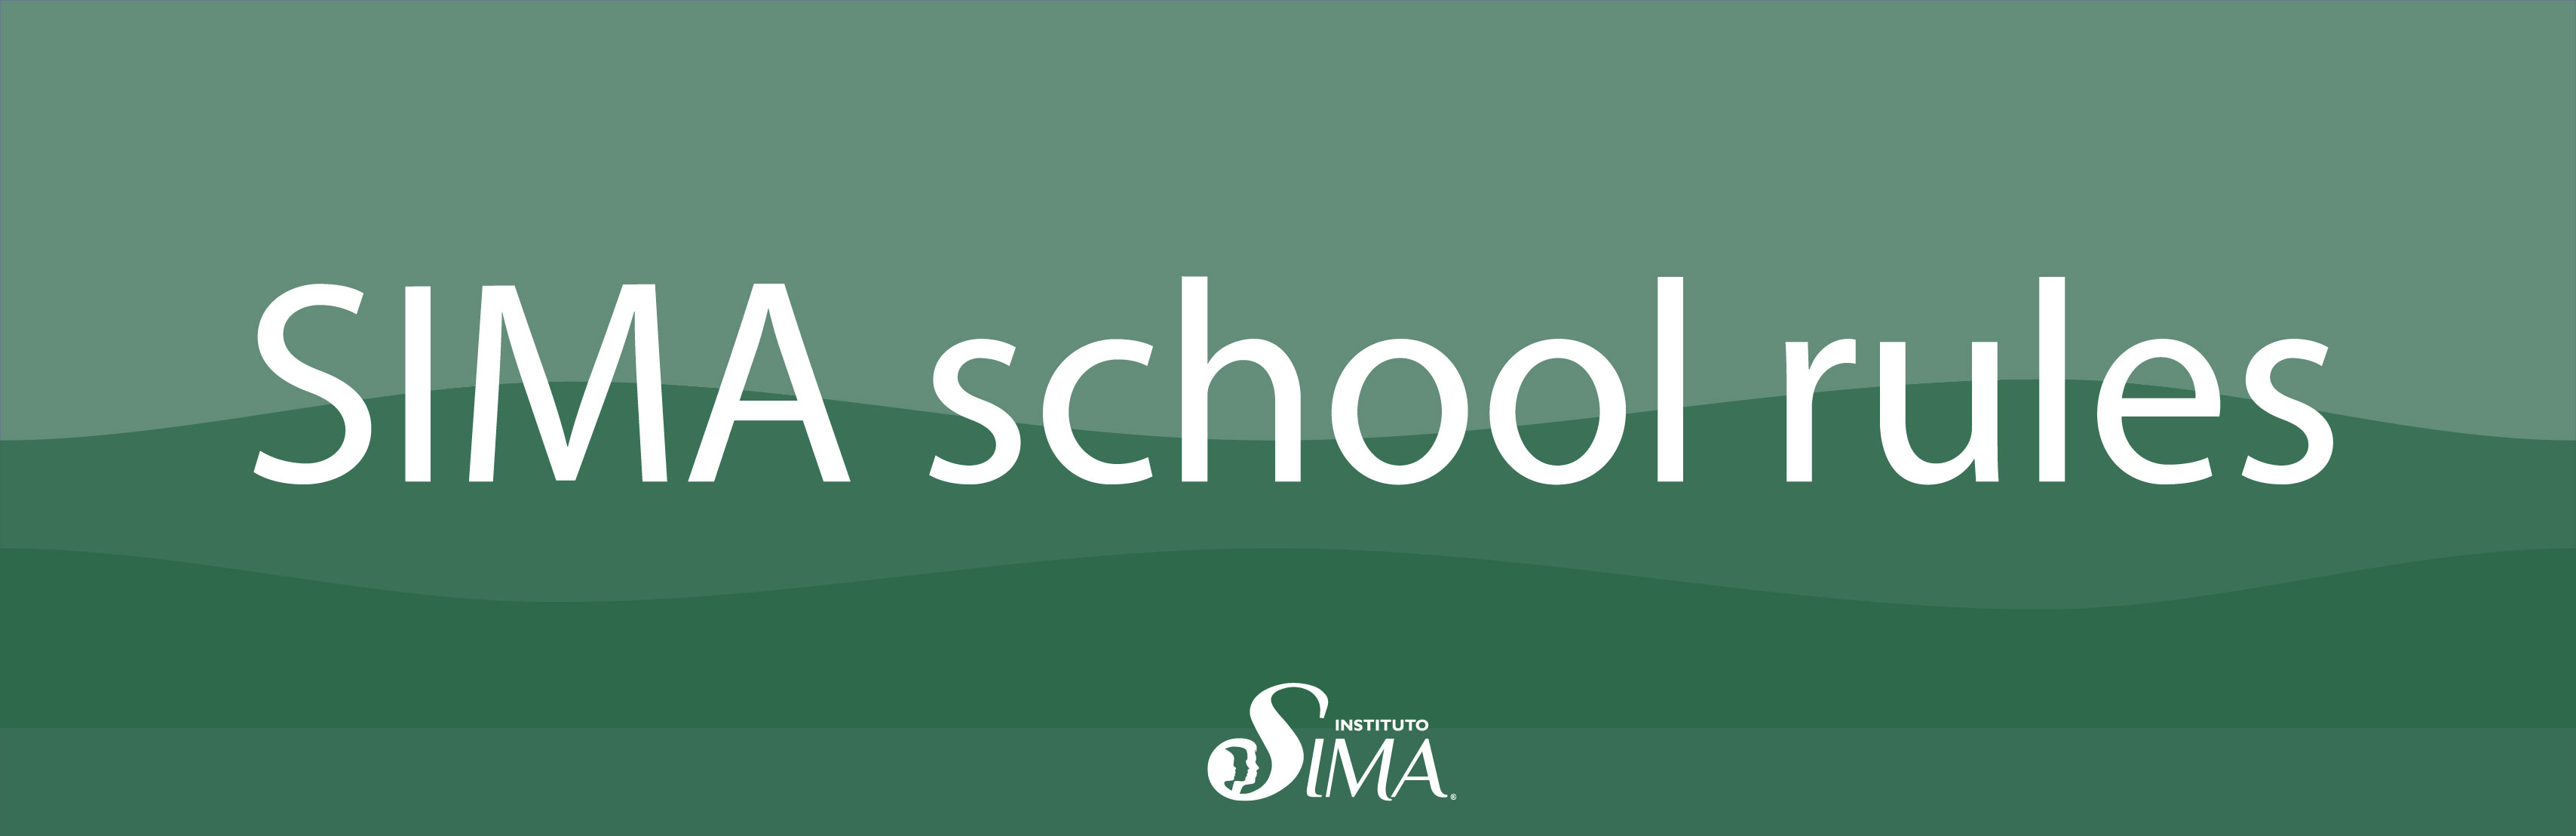 SIMA school rules